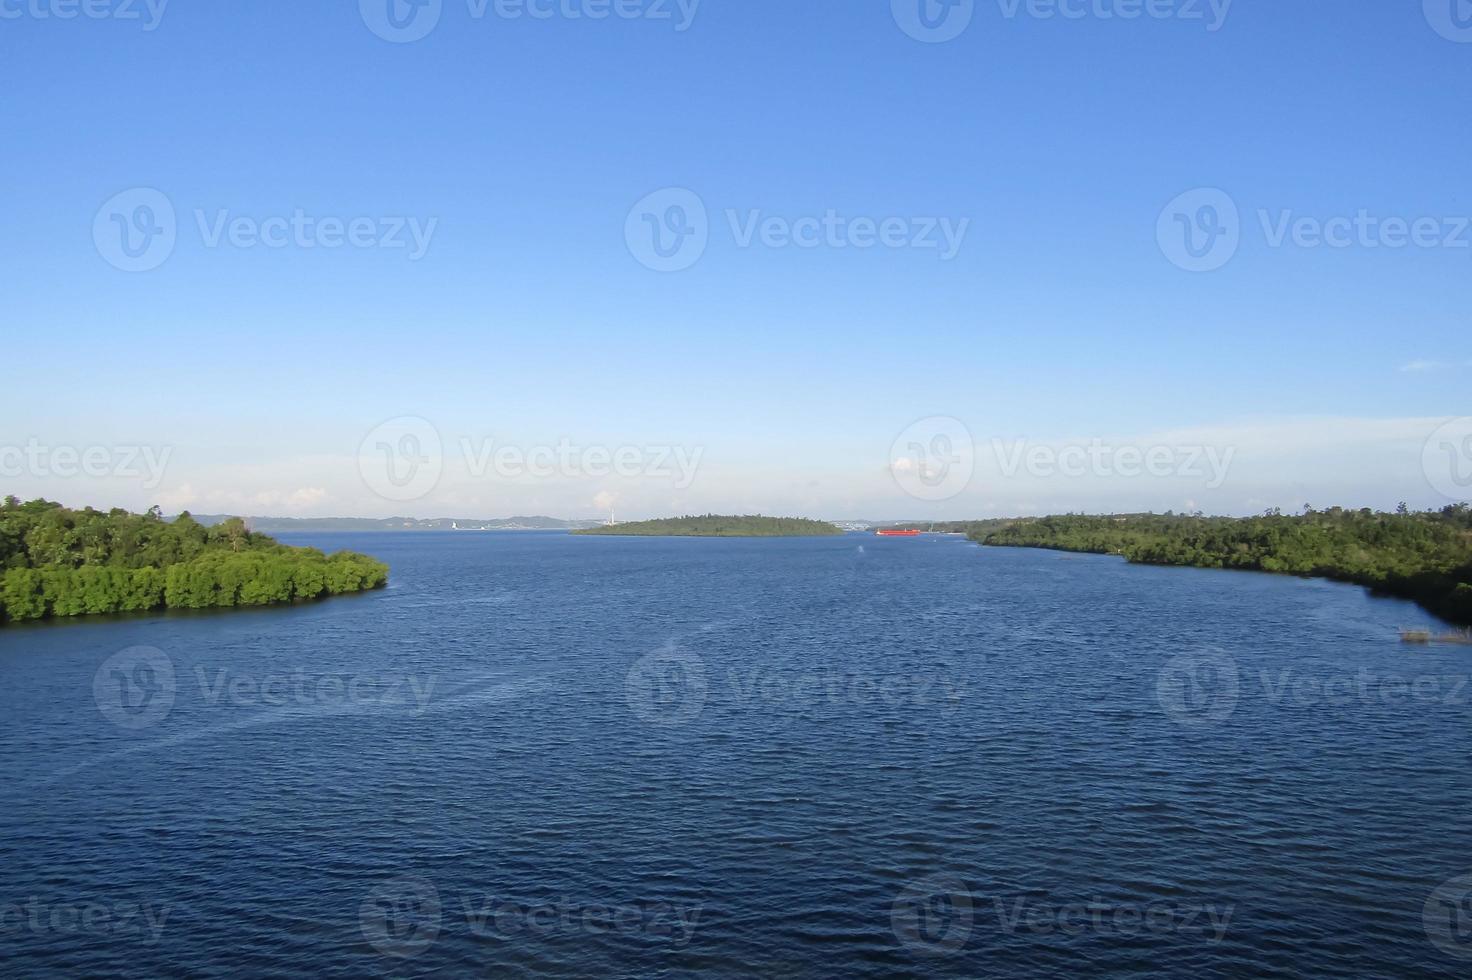 belle vue sur les eaux de la baie de l'île de balang, kalimantan photo